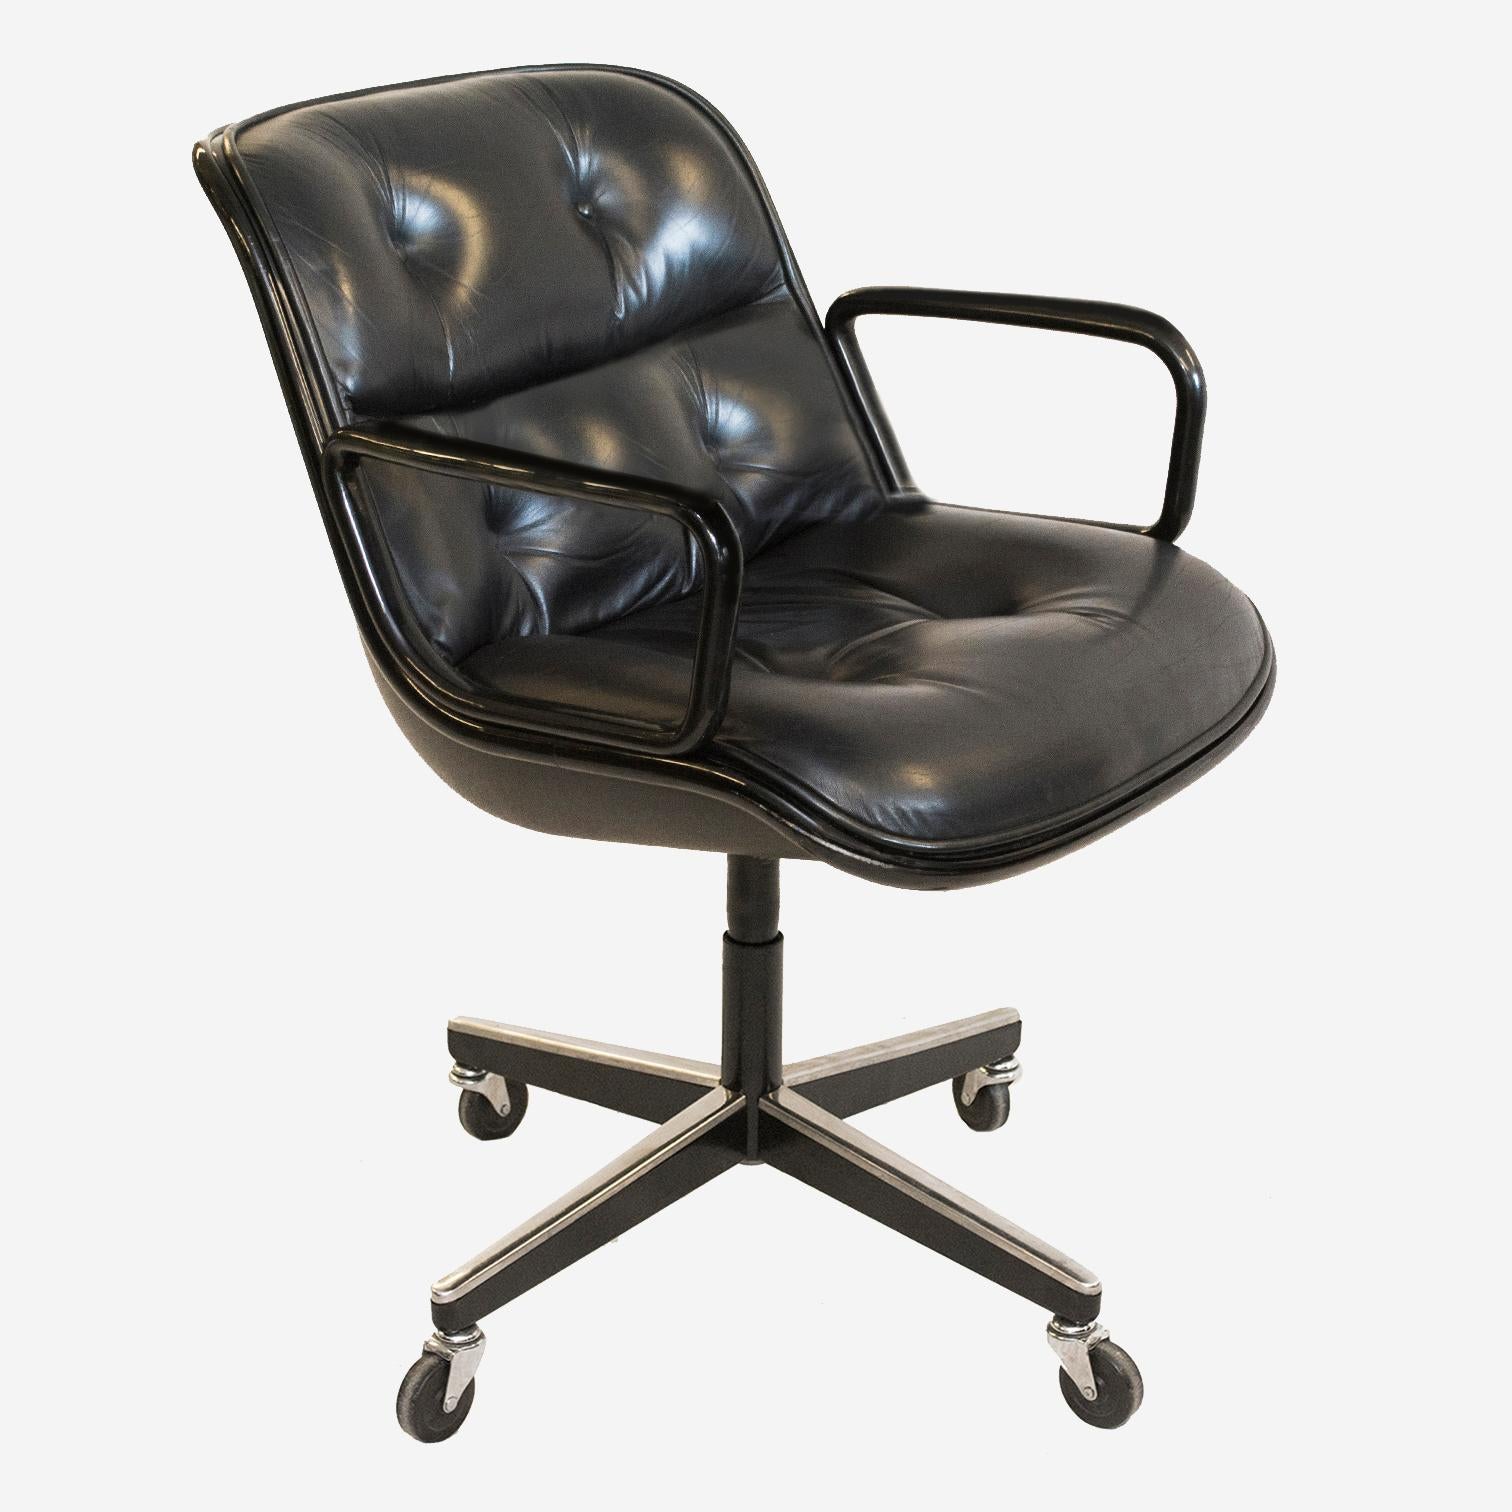 Nous proposons le fauteuil de direction classique Condit dans son cuir noir d'origine, sa structure en acier noir et son piètement vintage à 4 branches, en très bon état.

Charles Pollock était un maître du design dont le travail était soutenu par